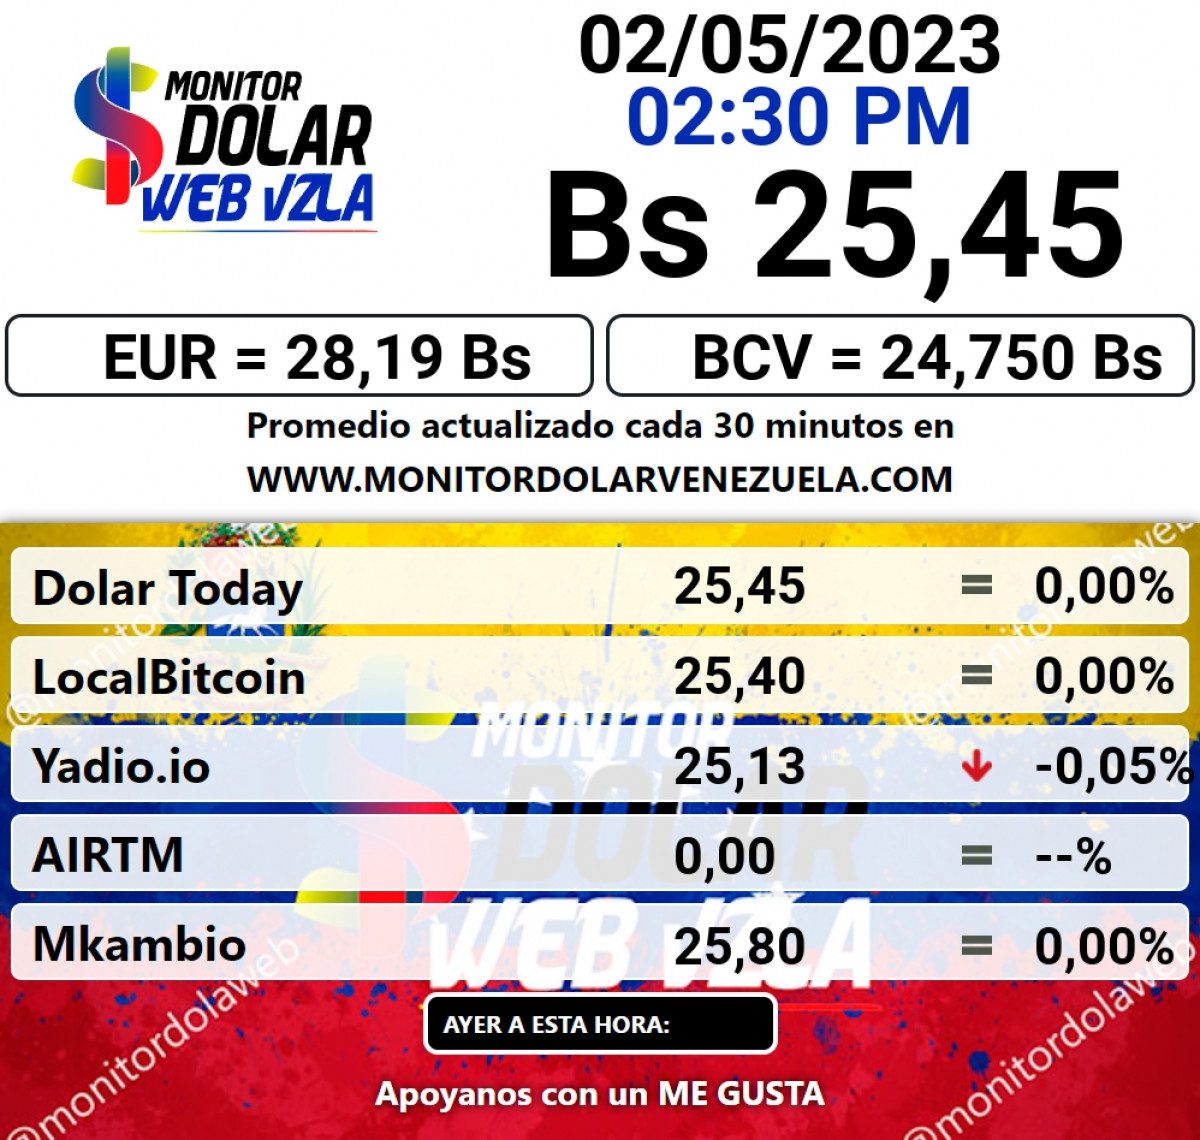 dolartoday en venezuela precio del dolar este martes 2 de mayo de 2023 laverdaddemonagas.com monitor1